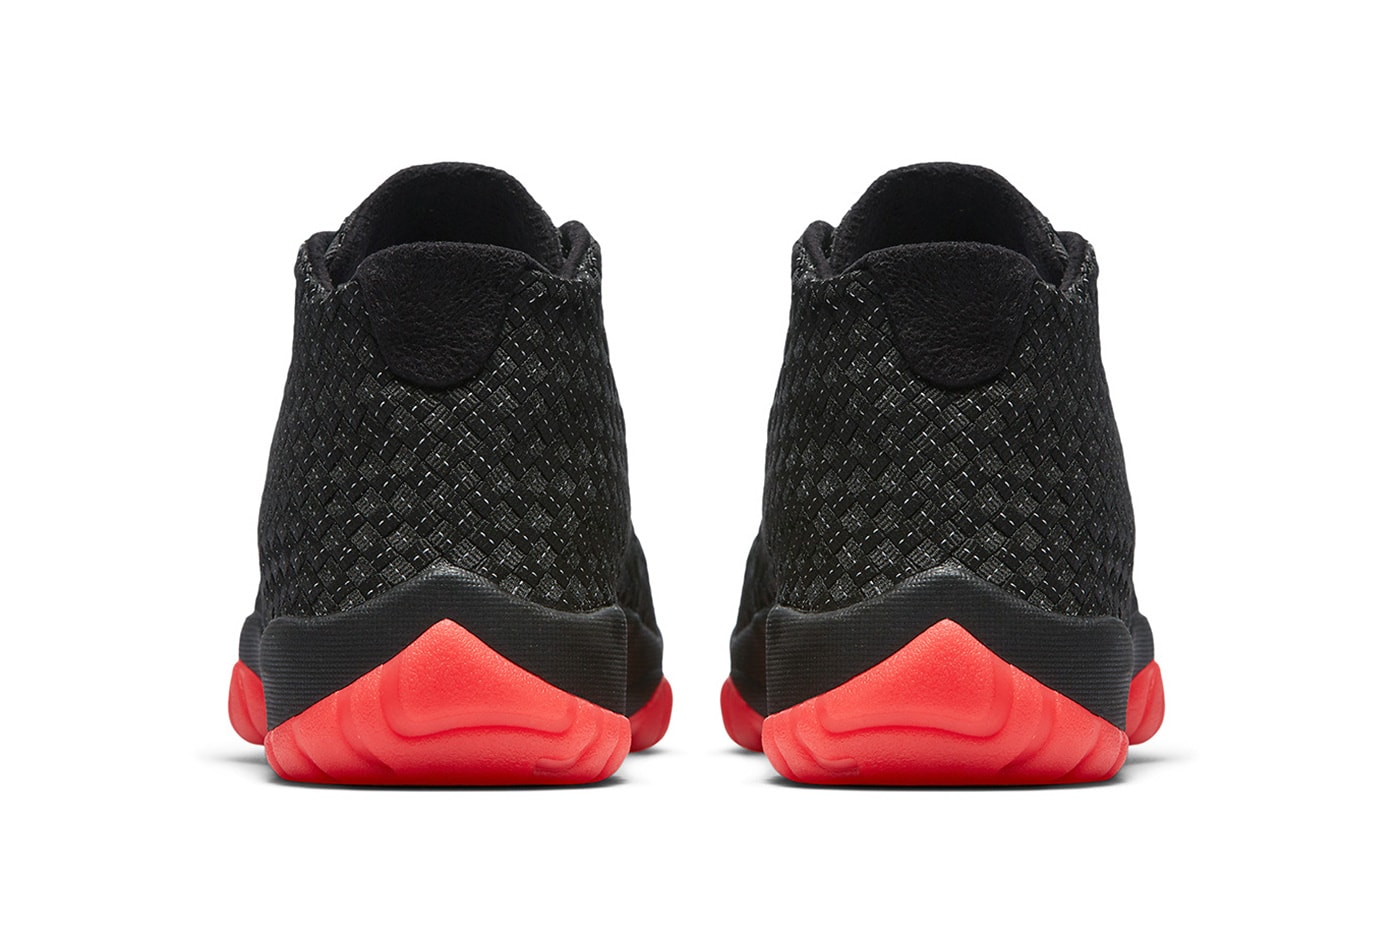 jordan future black black infrared 23 2018 footwear jordan brand